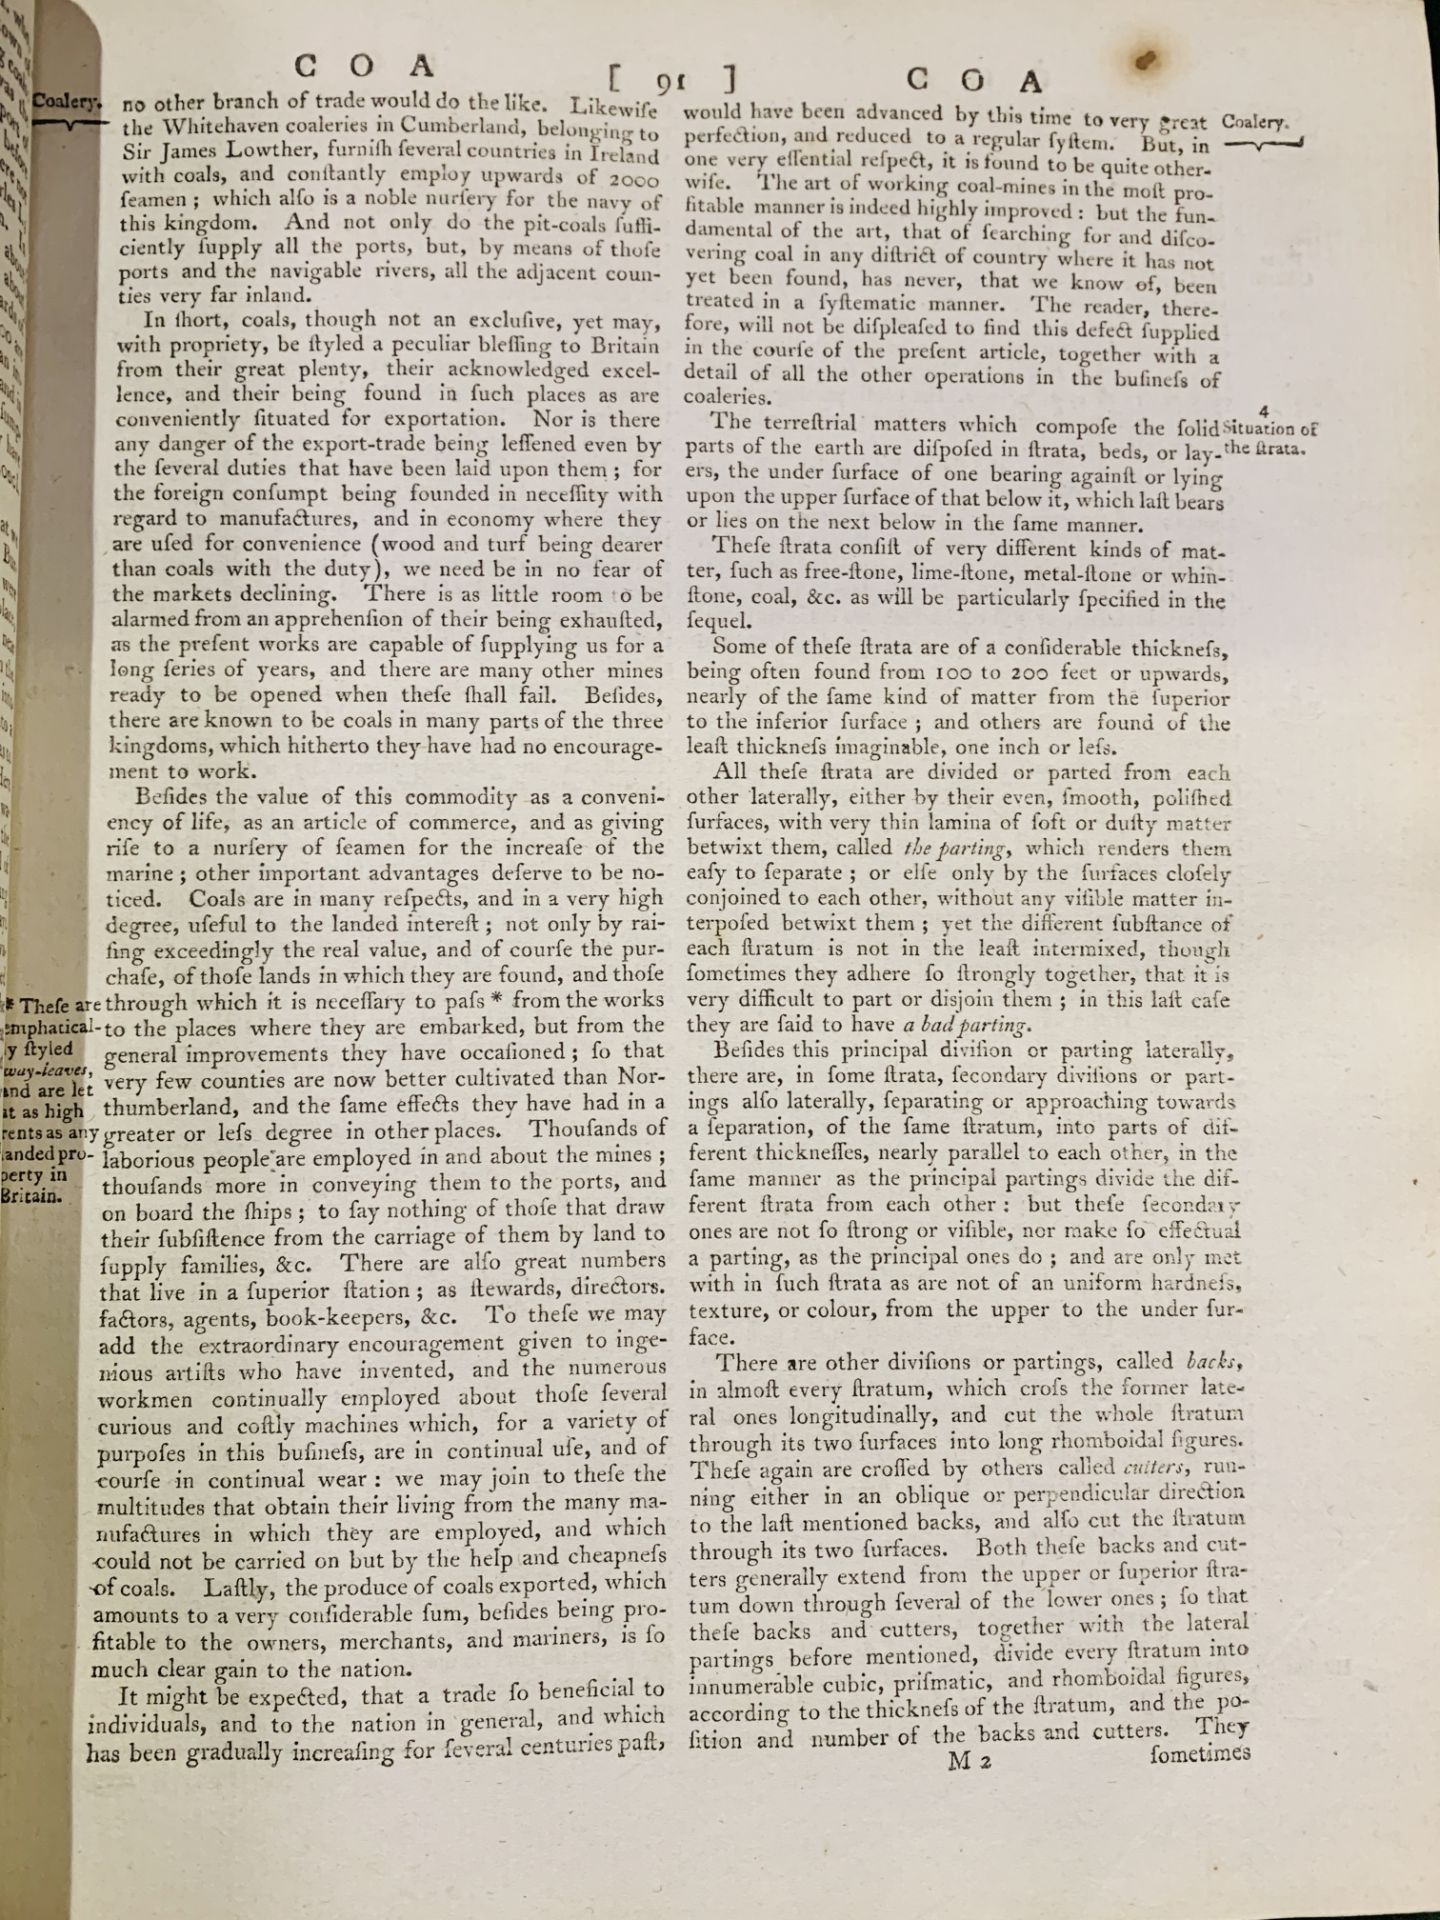 Encyclopedia Britannica, 1797 - Image 6 of 8